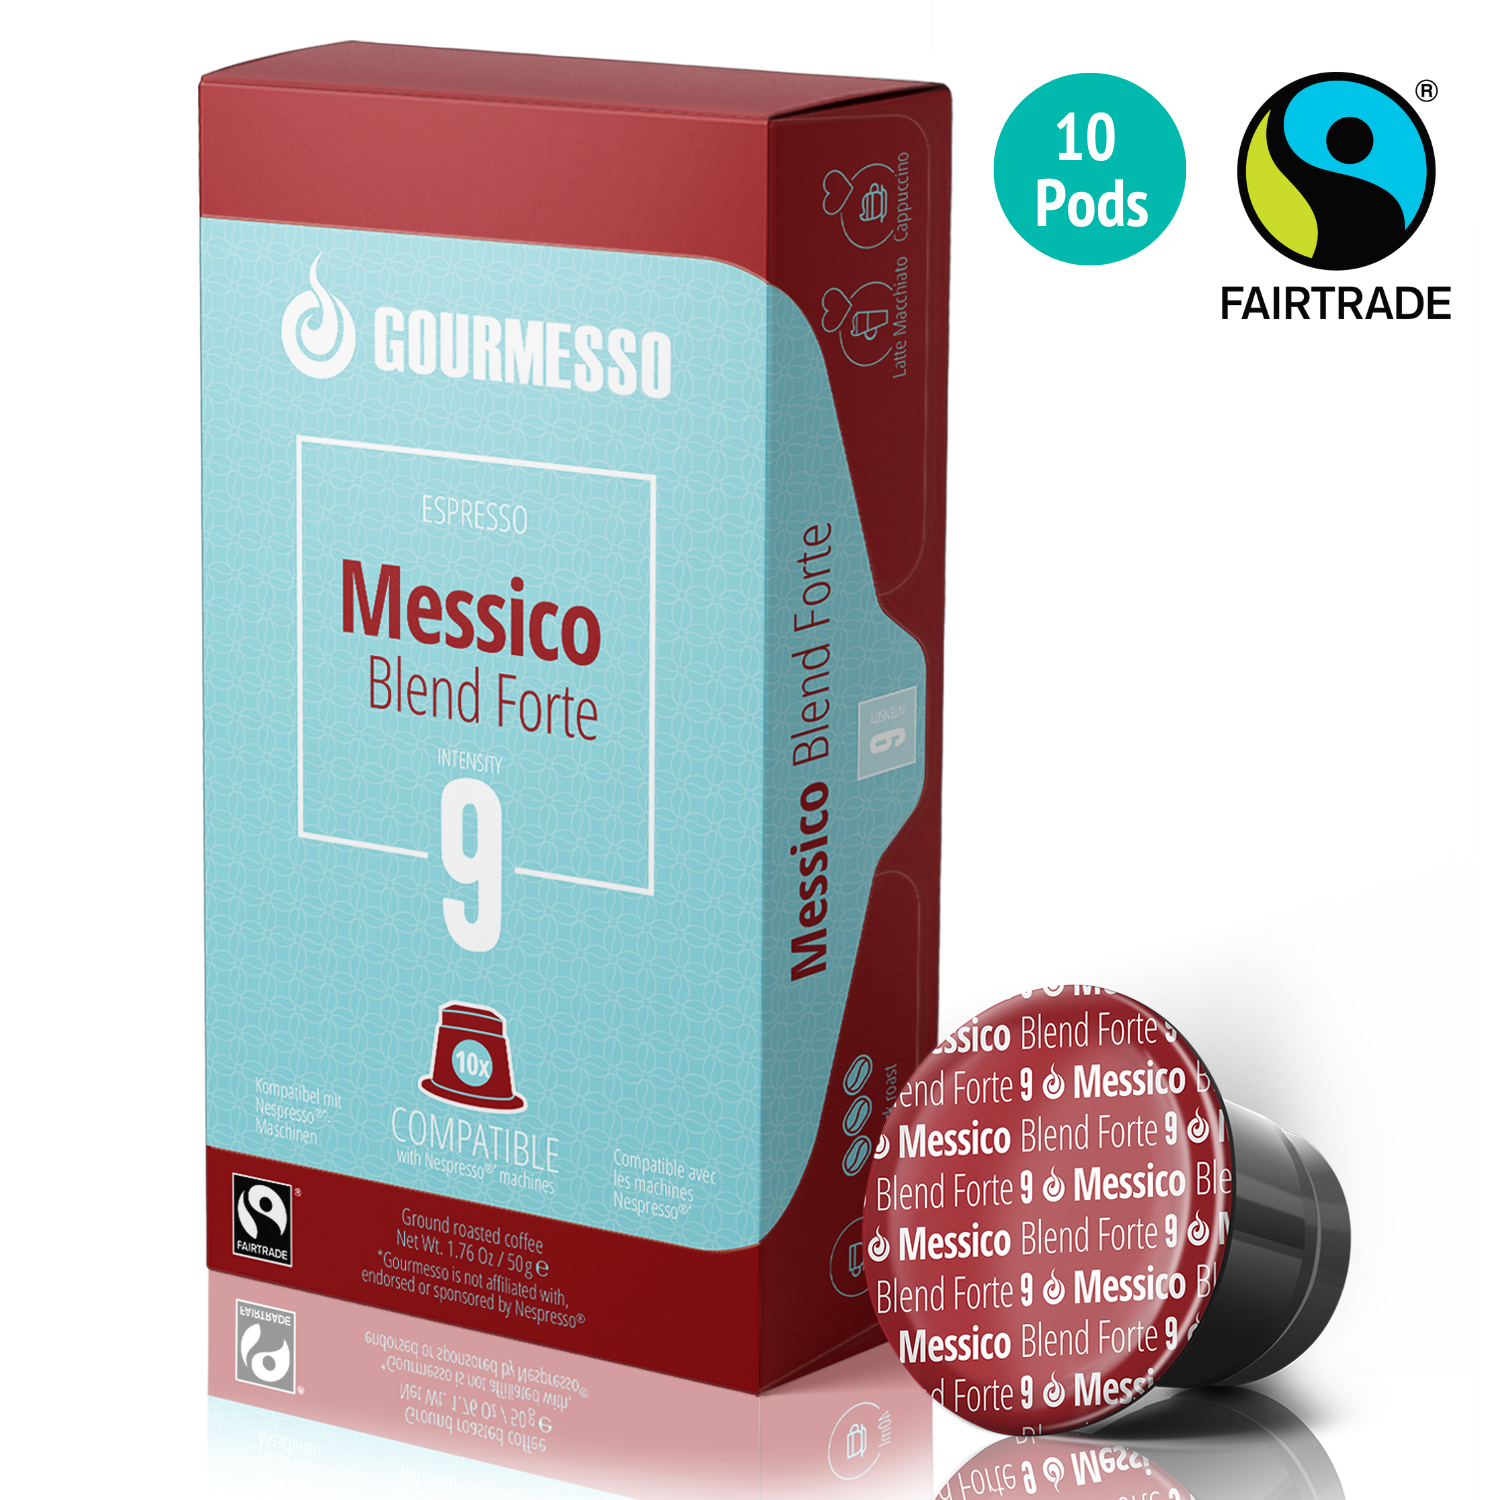 Image of Gourmesso Messico Blend Forte - Fairtrade - 10 Pods